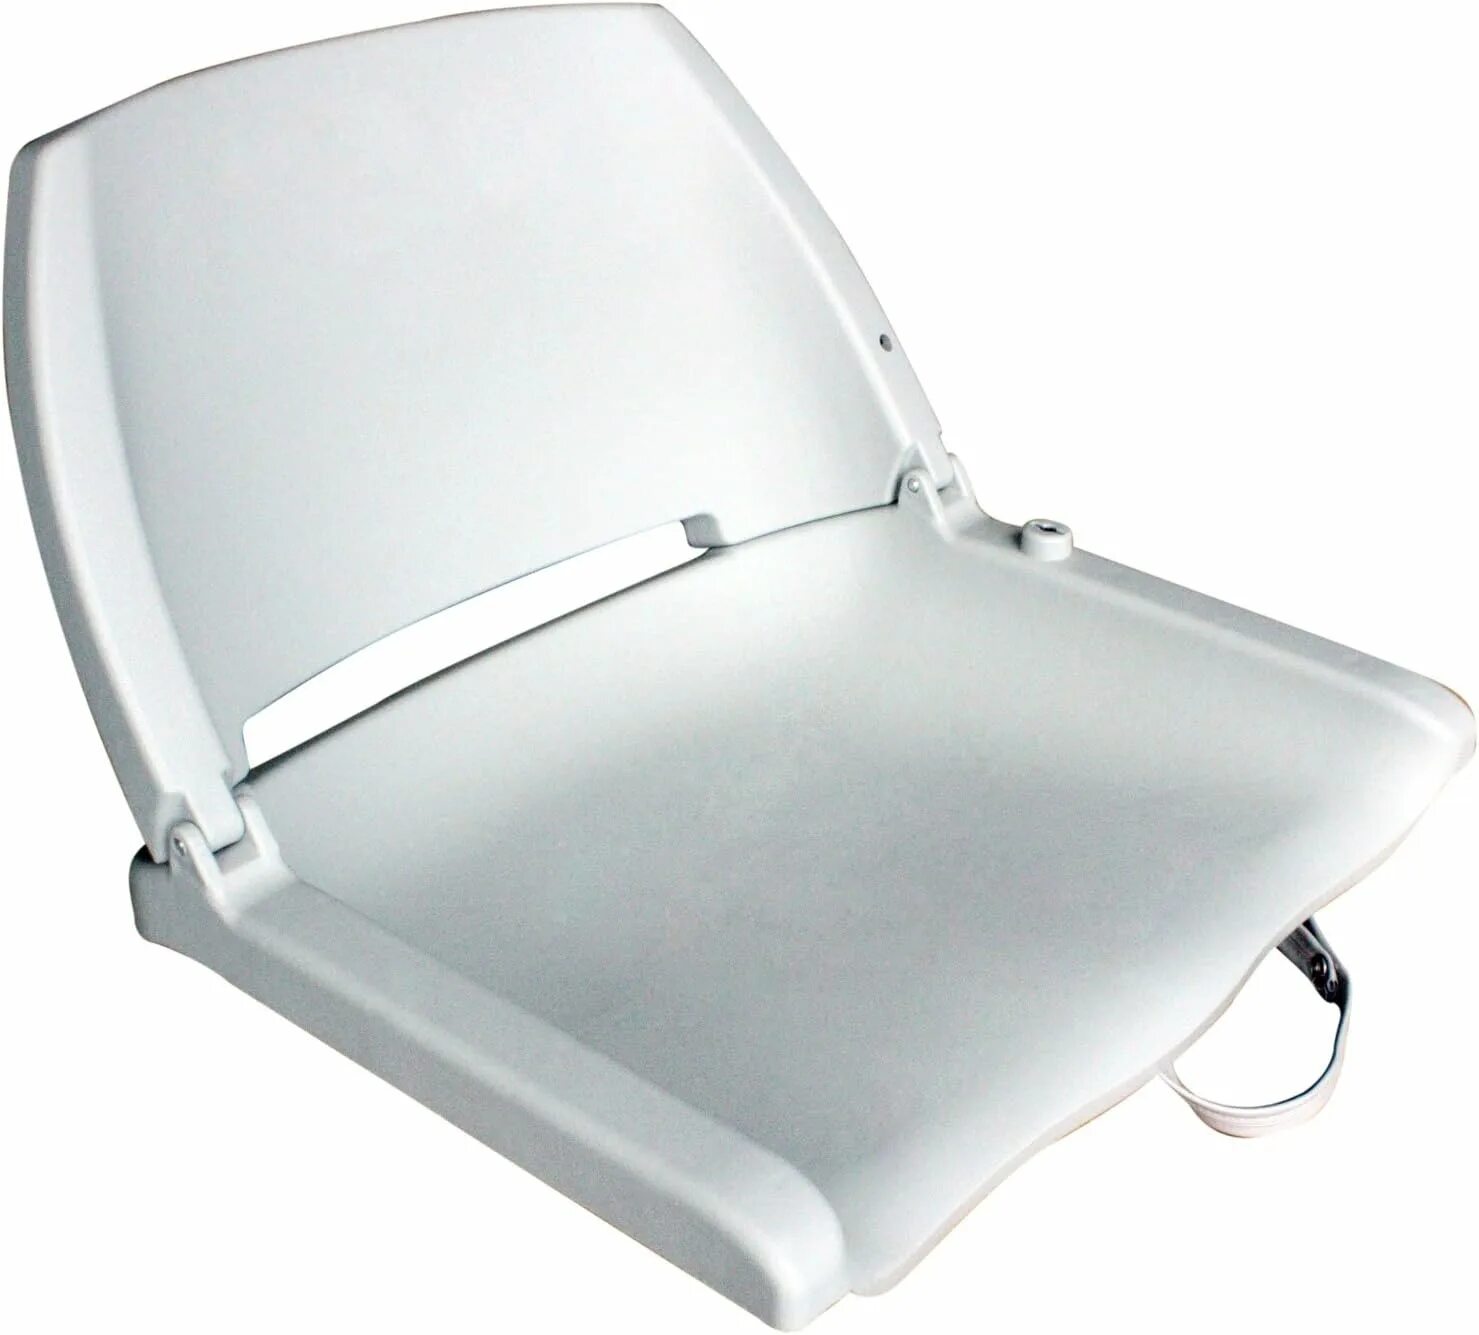 Сиденье складное пластиковое 75110bk. Сиденье мягкое складное Classic Low back Seat. Складное сиденье для лодки ПВХ. Сиденье пластиковое для лодки. Сидушки для лодки